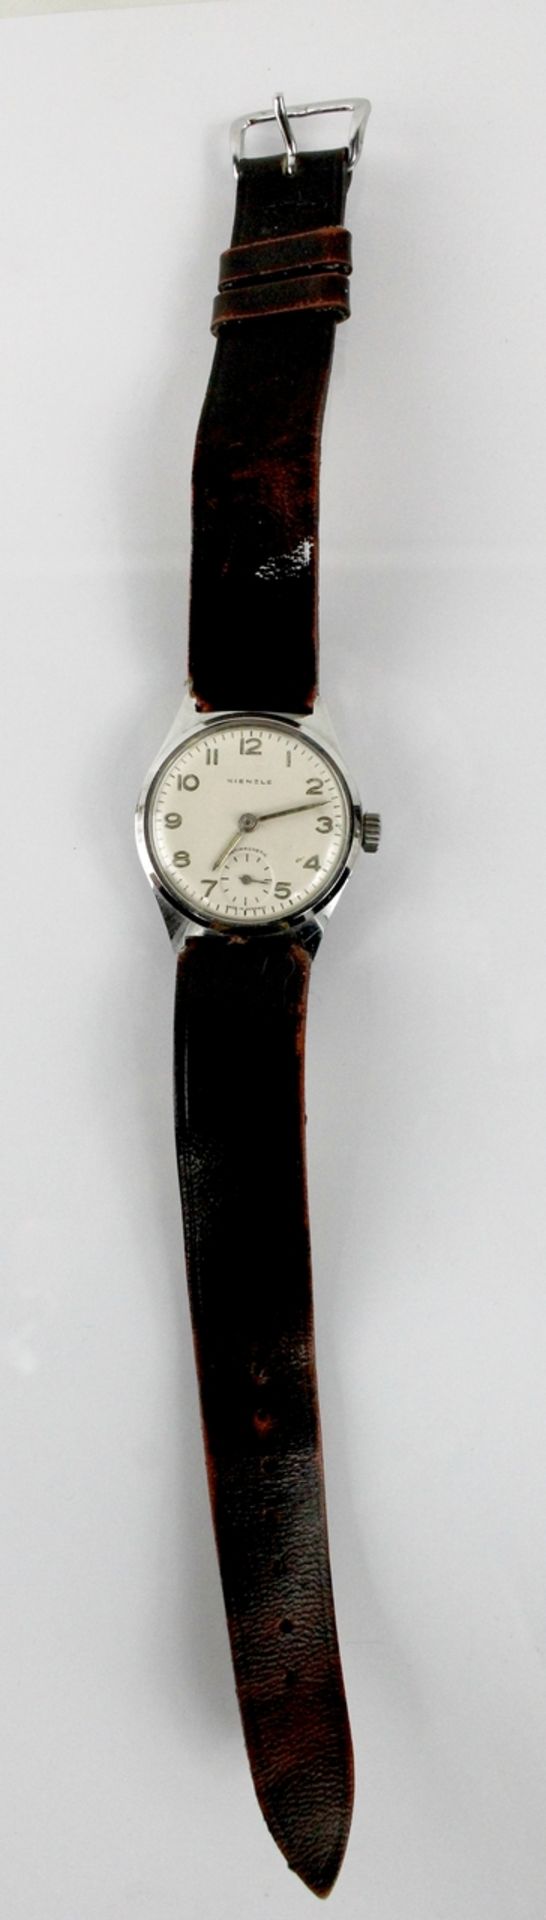 Kienzle Antimagnetic Armbanduhr 1950er Jahre - Image 2 of 3